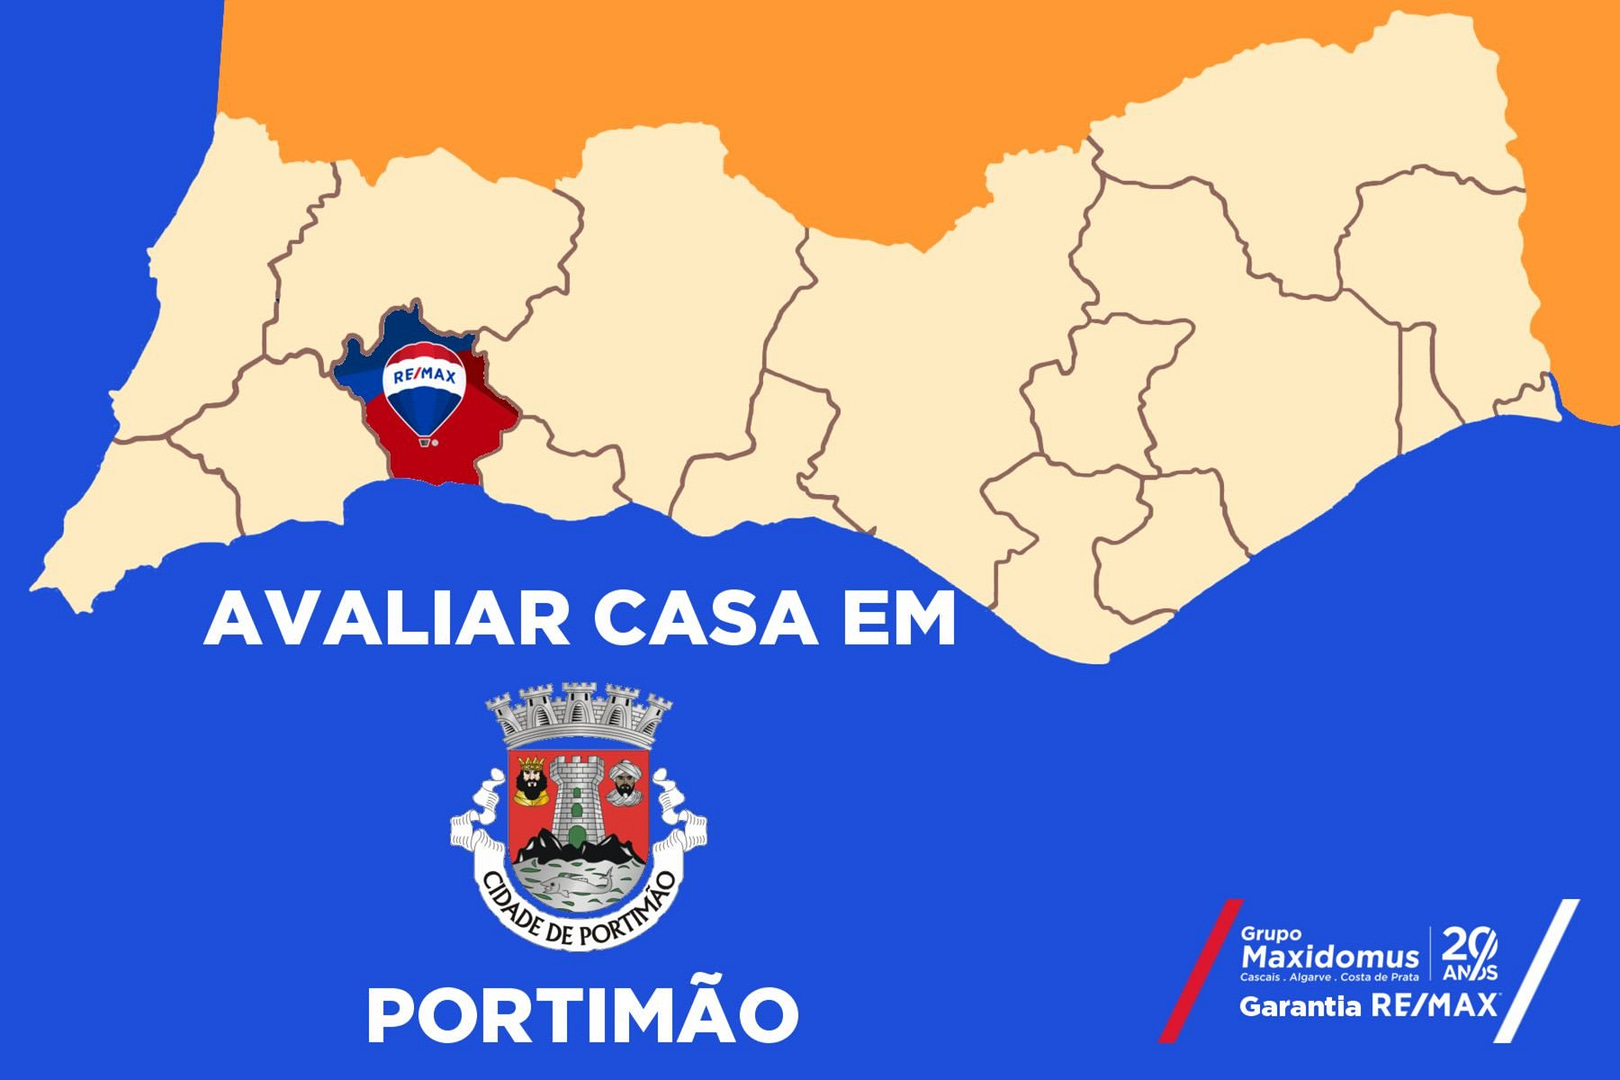 Avaliar casa em Portimão